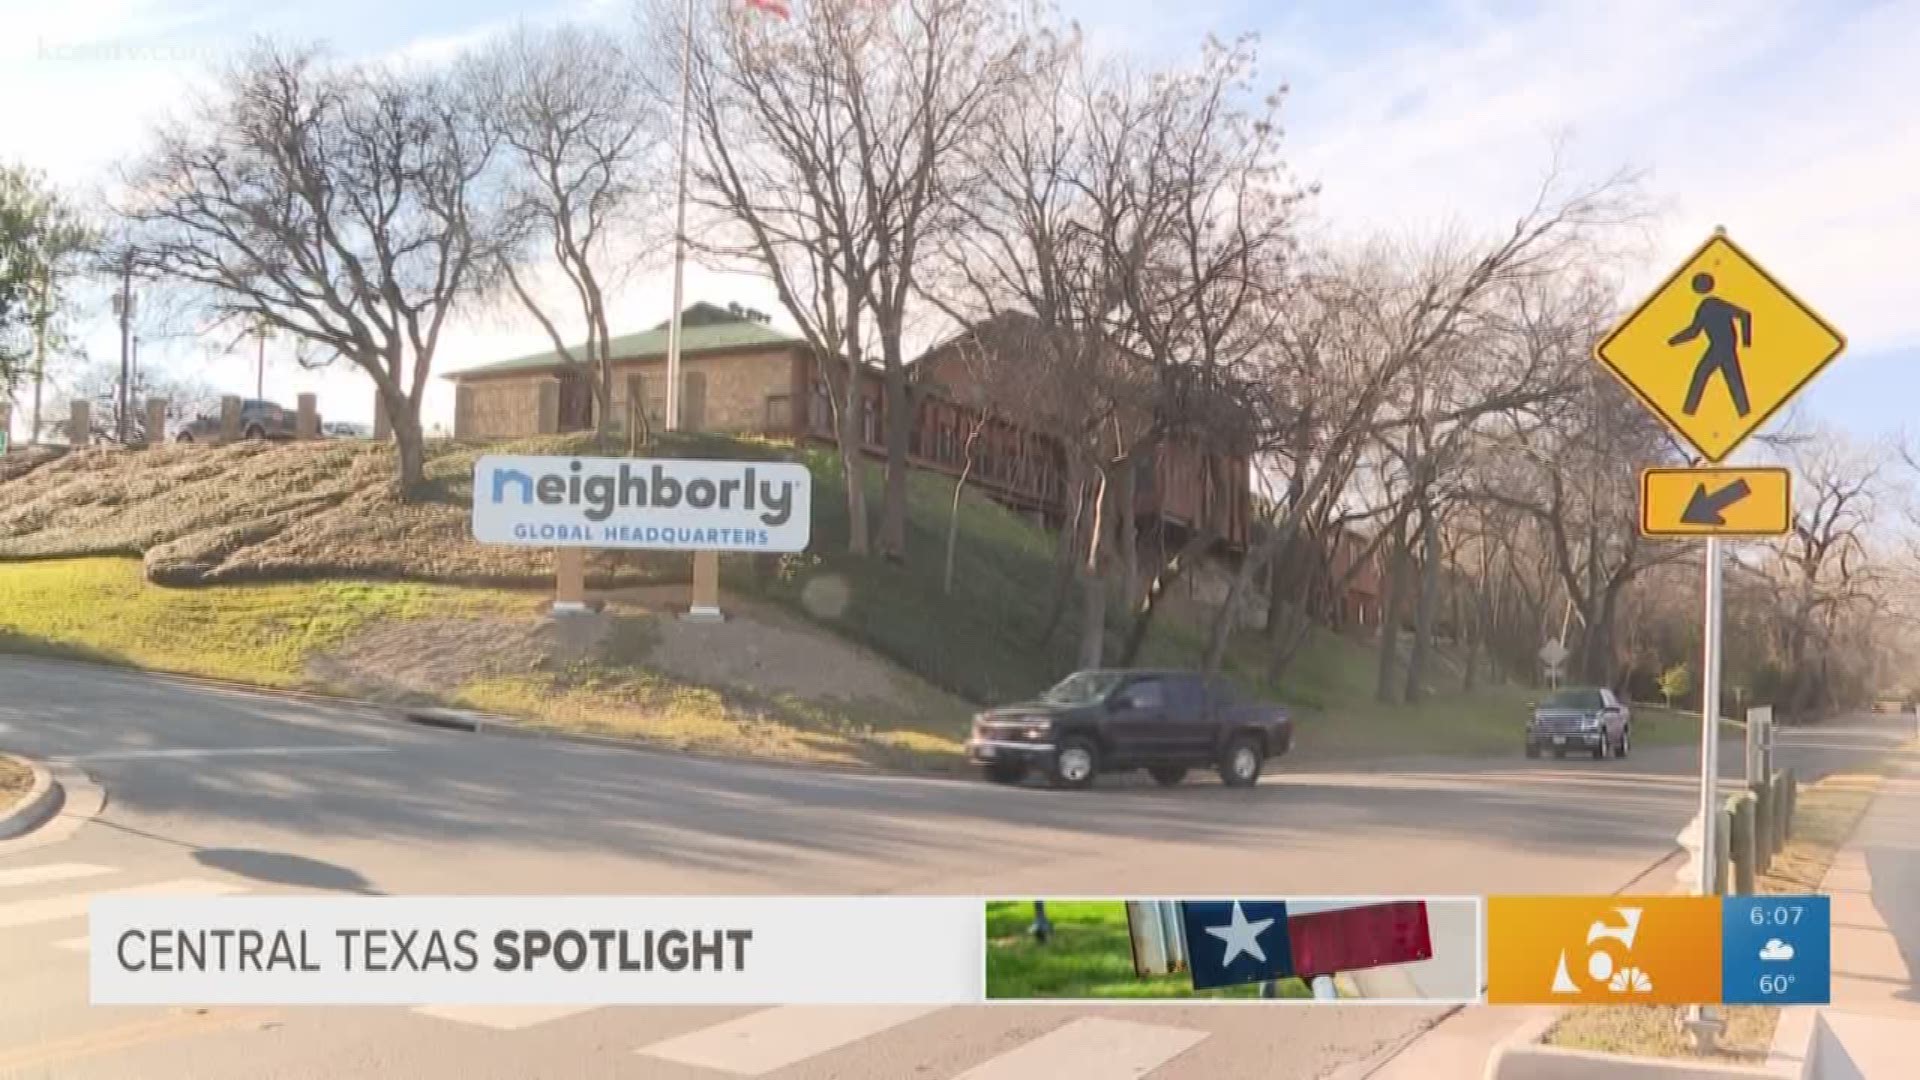 Central Texas Spotlight: Neighborly